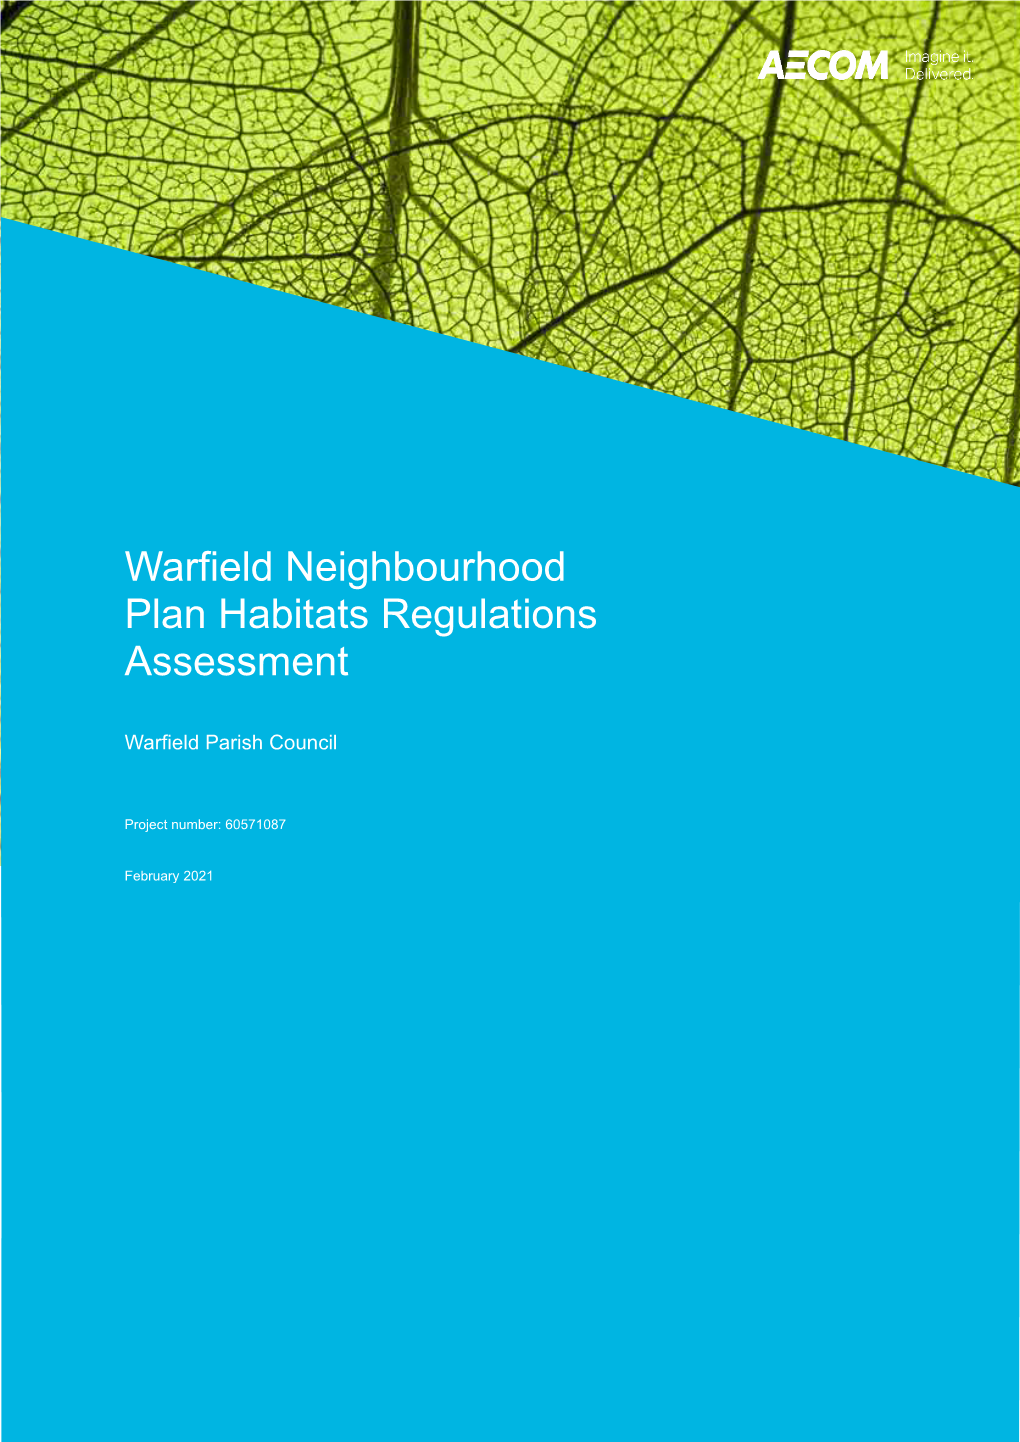 Warfield Neighbourhood Plan Habitats Regulations Assessment